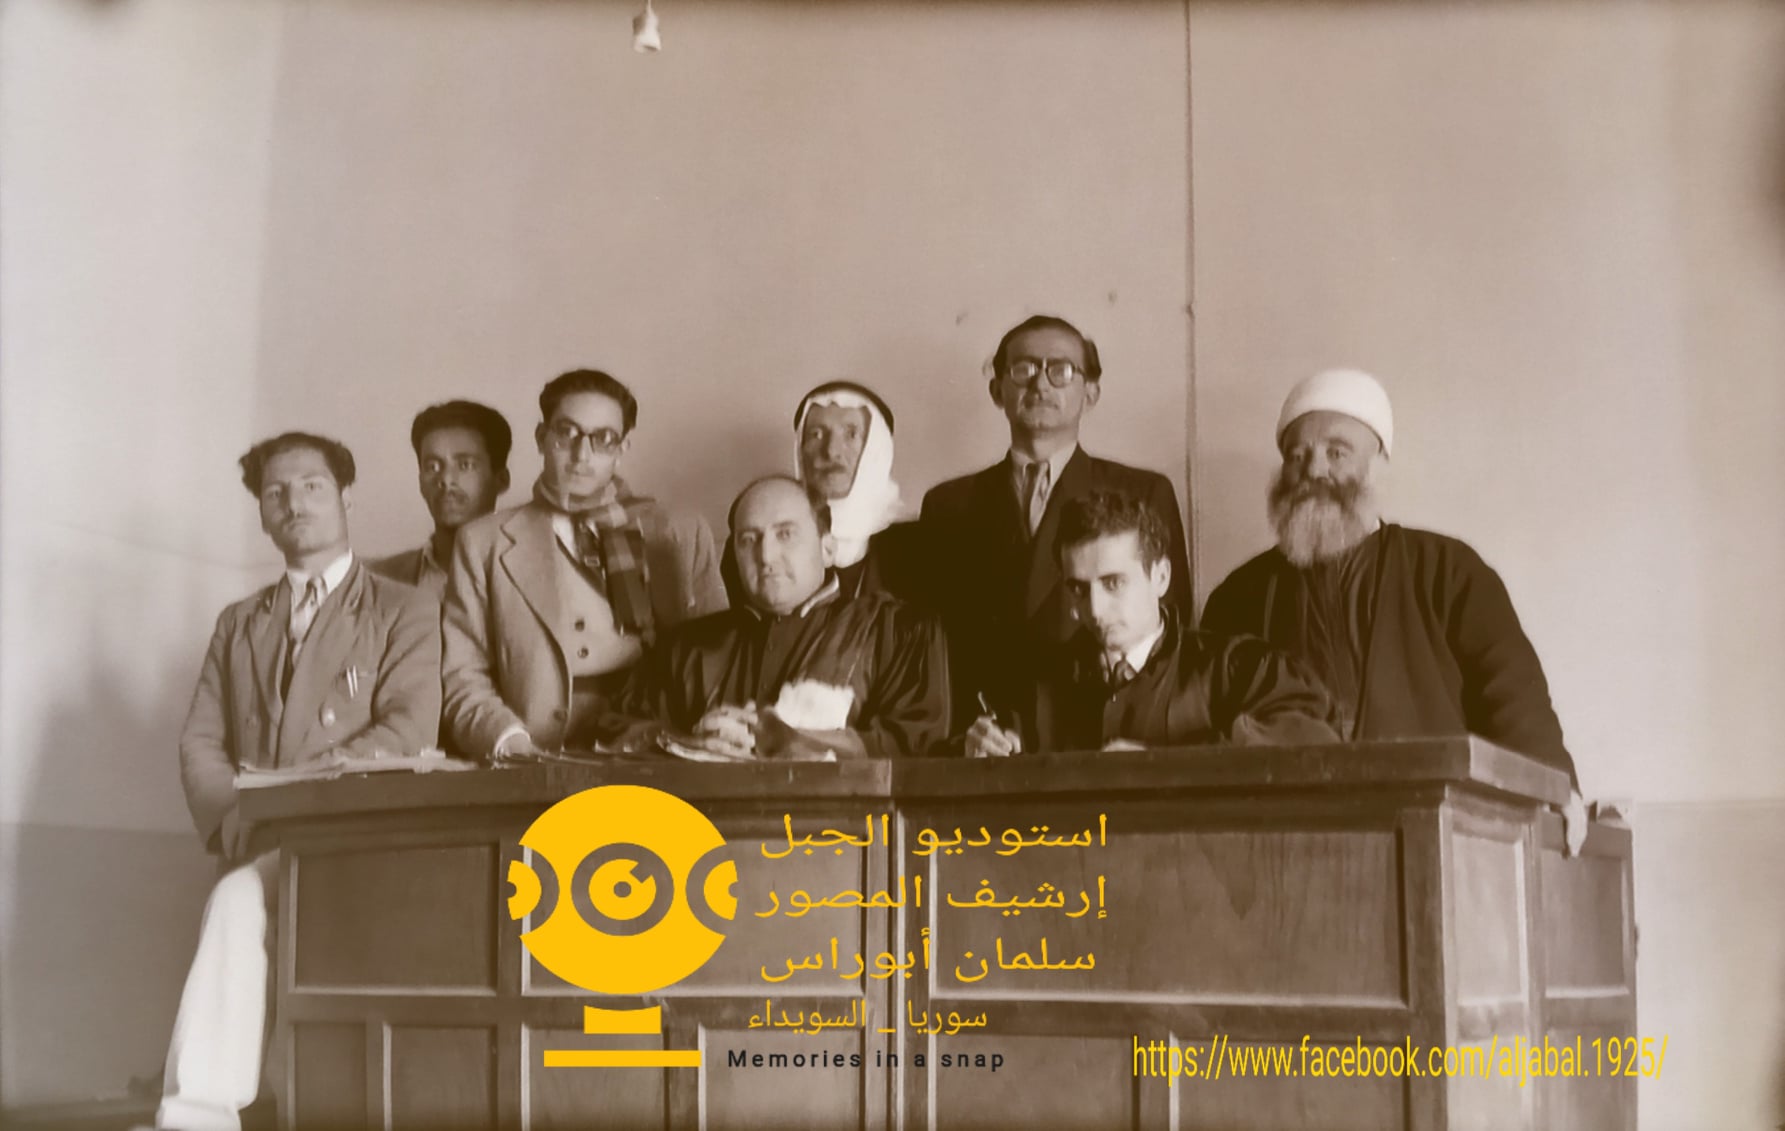 التاريخ السوري المعاصر - قاضي محكمة الصلح في السويداء في خمسينيات القرن العشرين